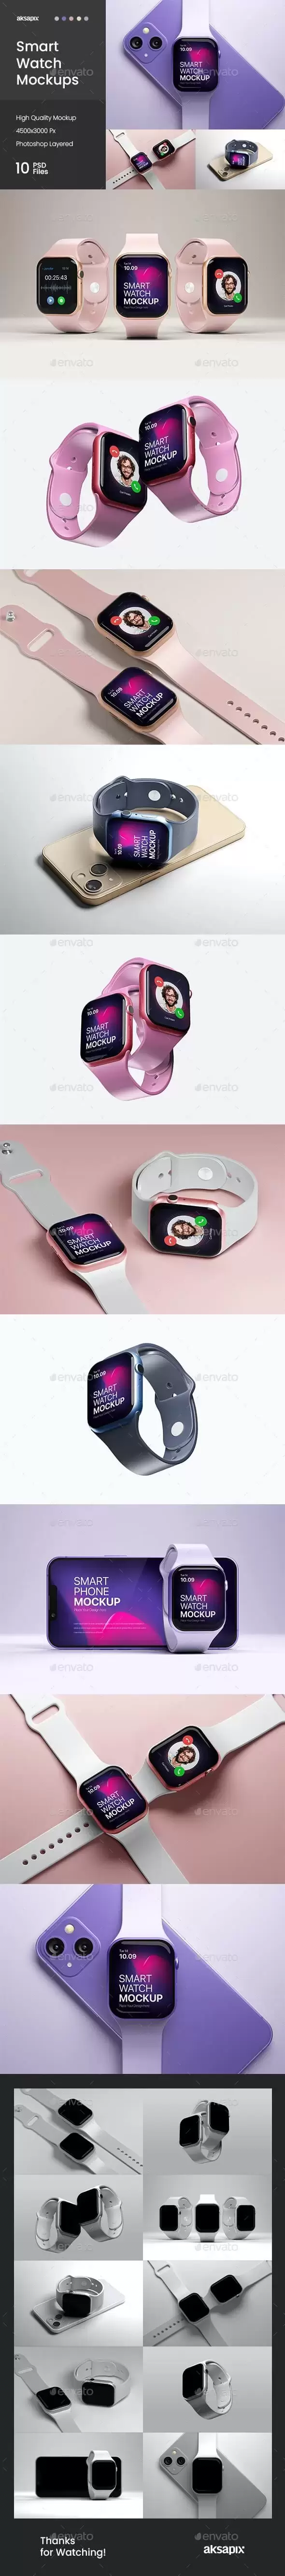 Apple Watch智能手表样机 (psd)免费下载插图